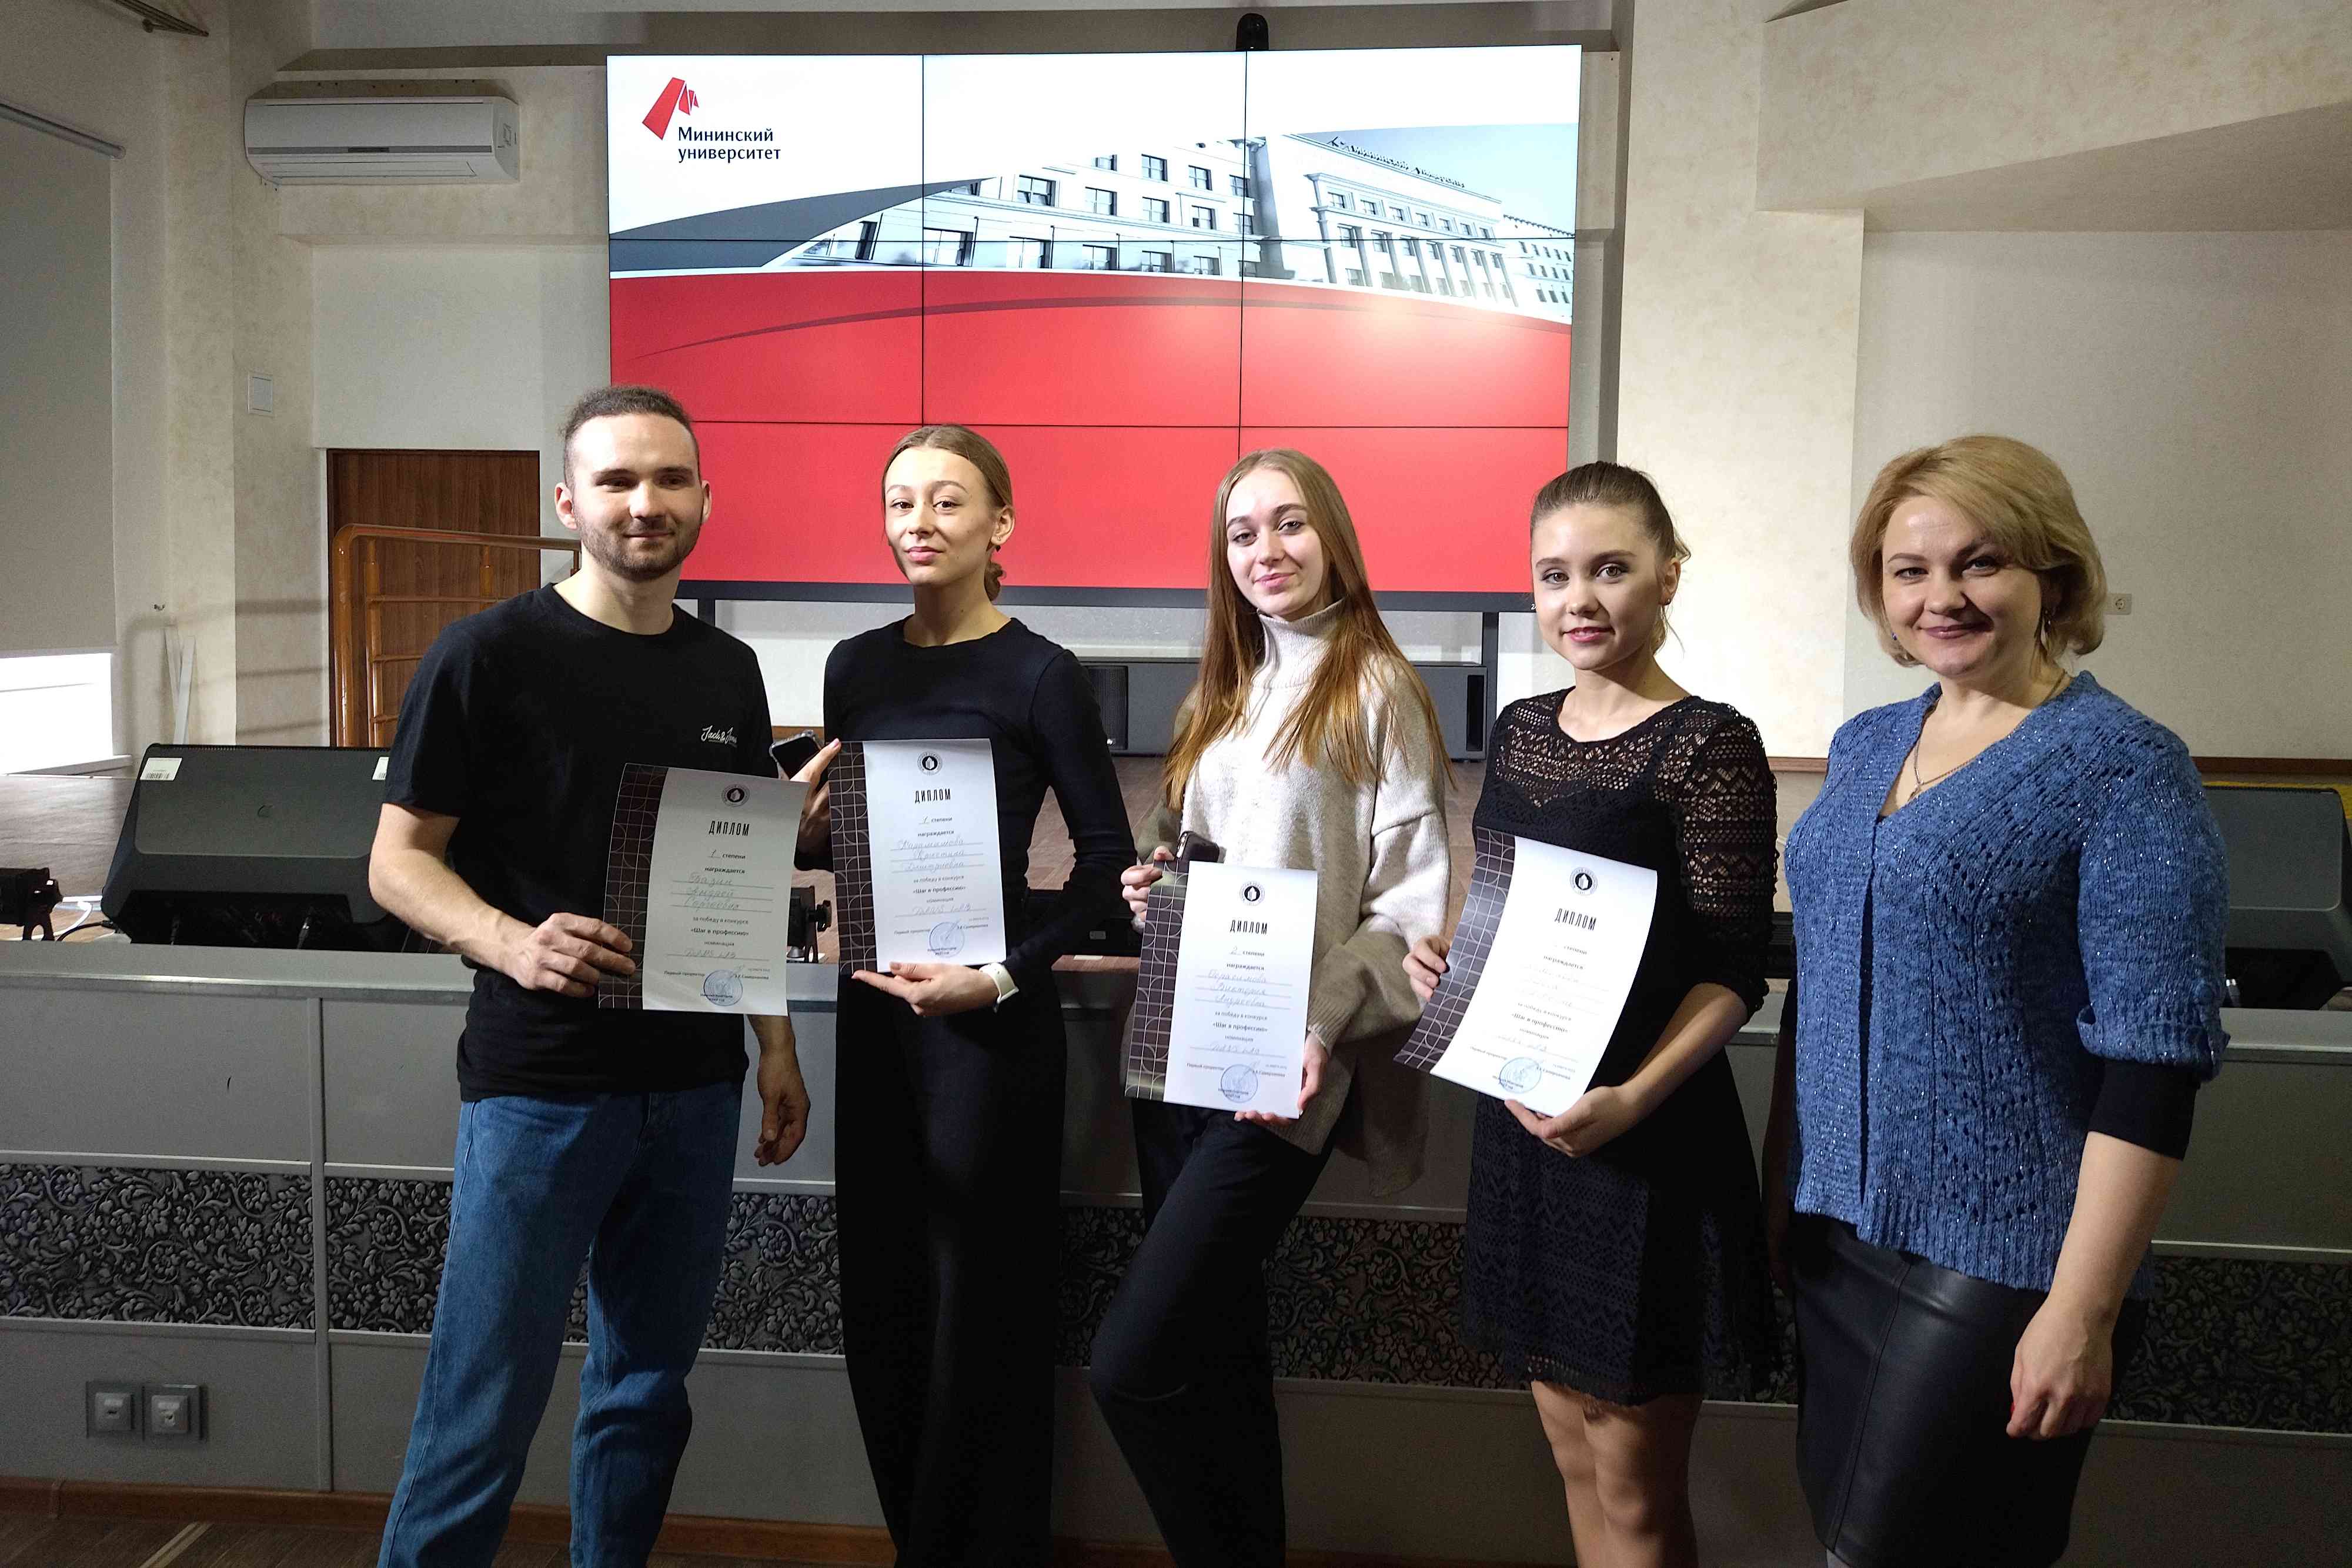 Танцевальный мастер-класс для абитуриентов-хореографов прошёл в Мининском университете